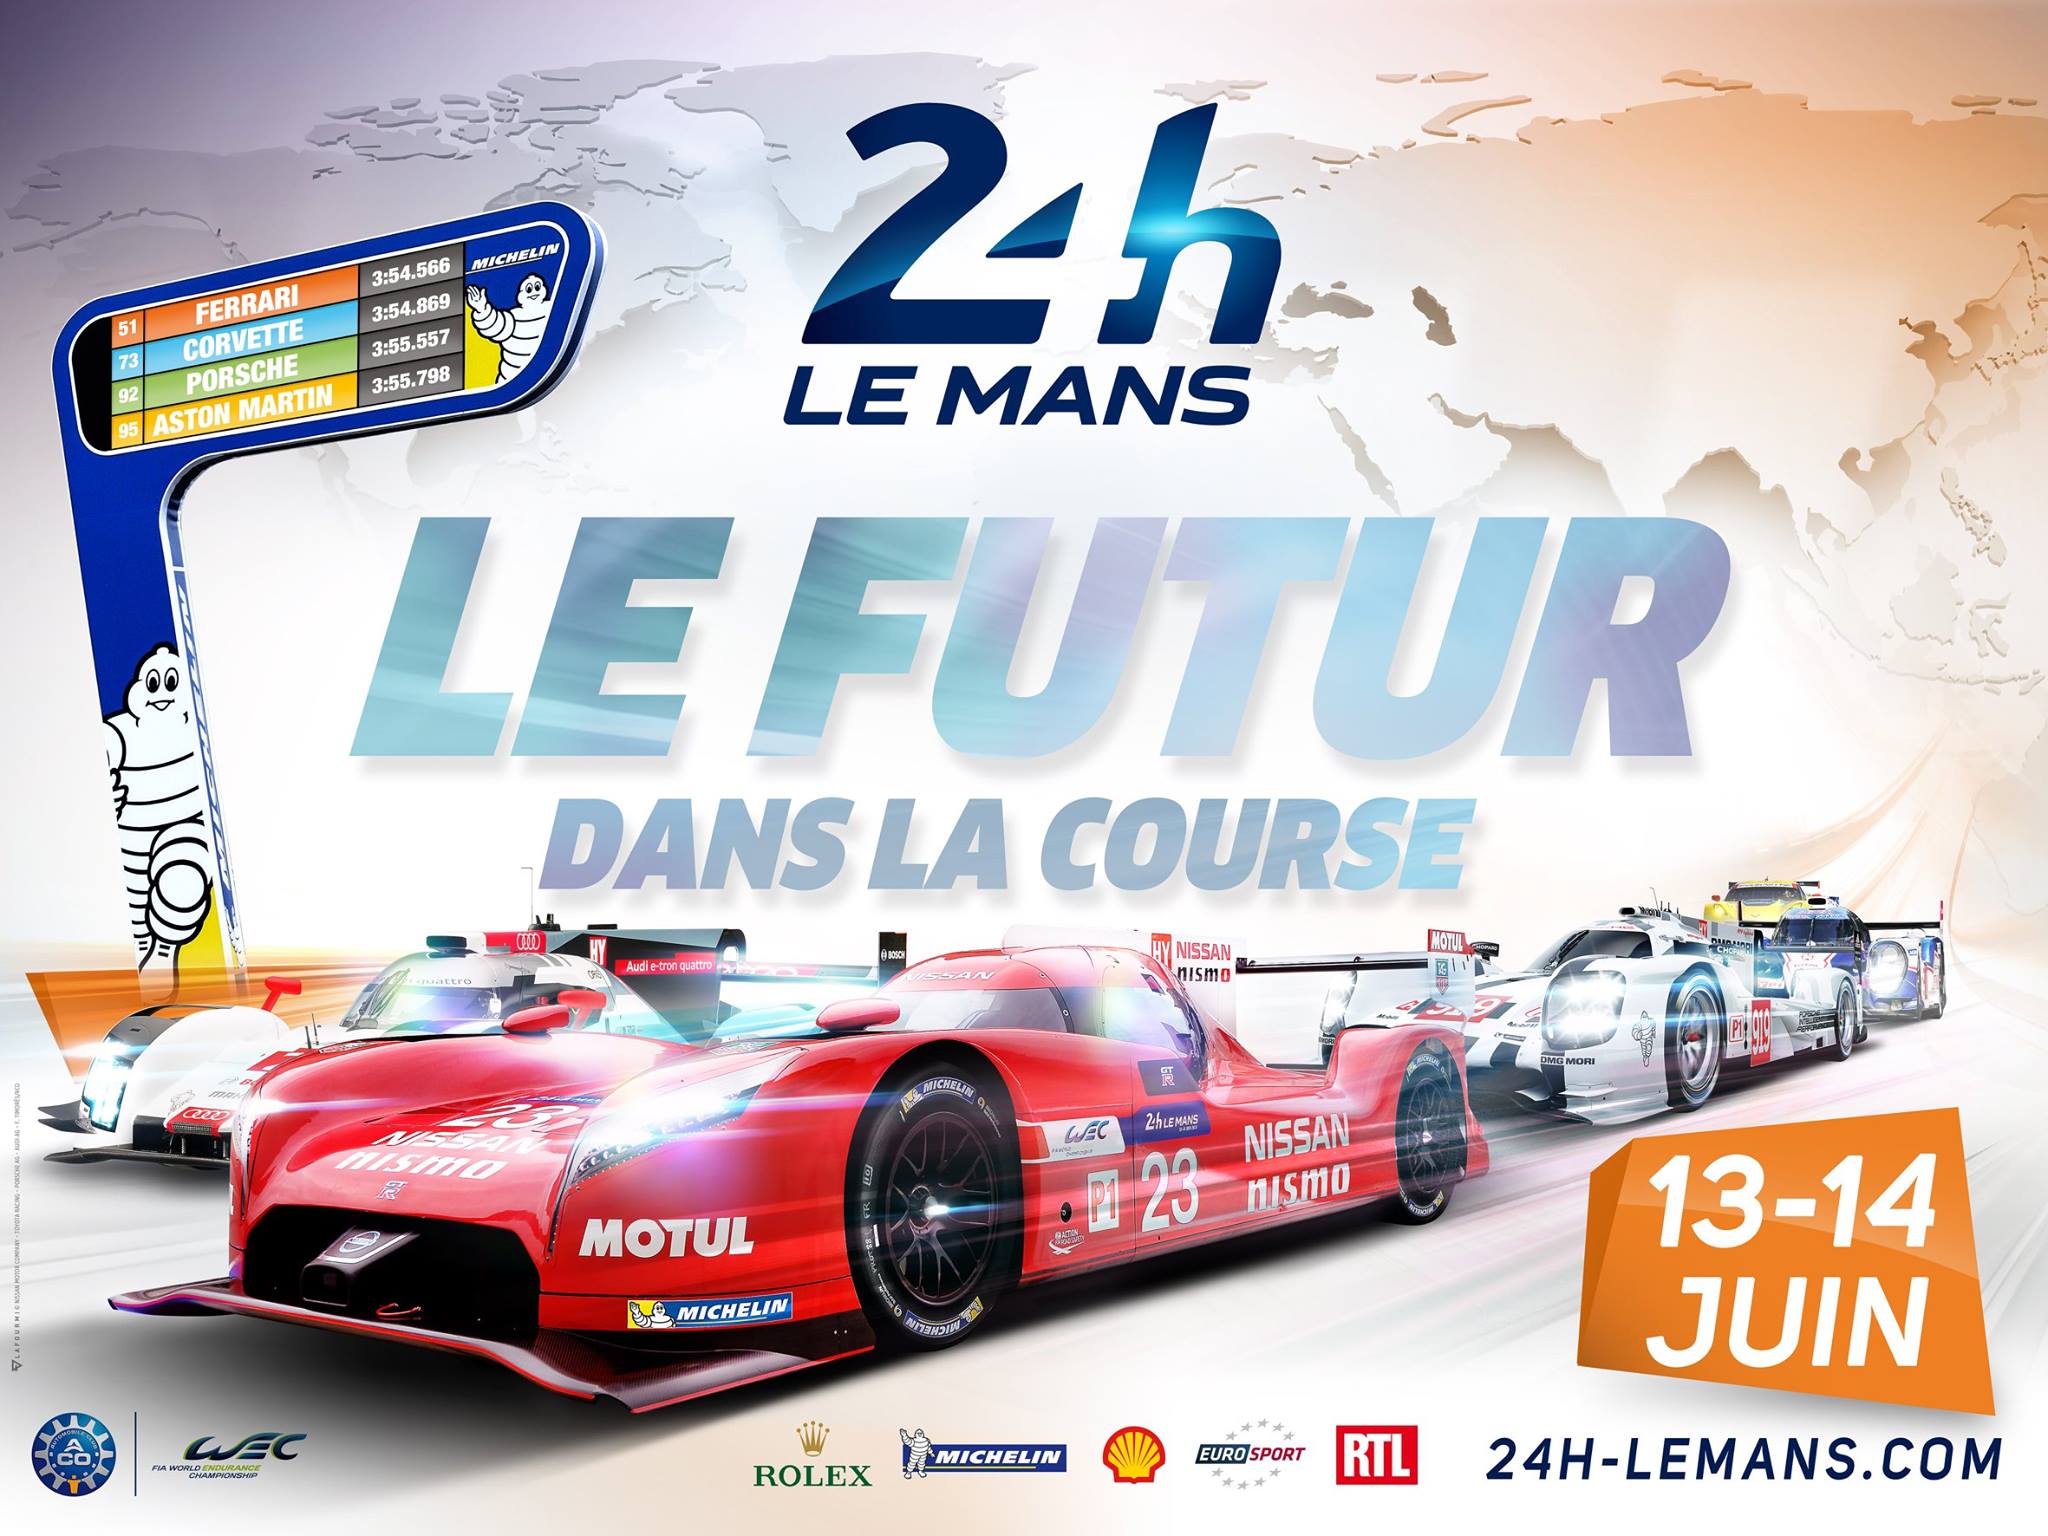 Em cerimônia na França, ACO apresenta equipes que irão disputar Le Mans 2015